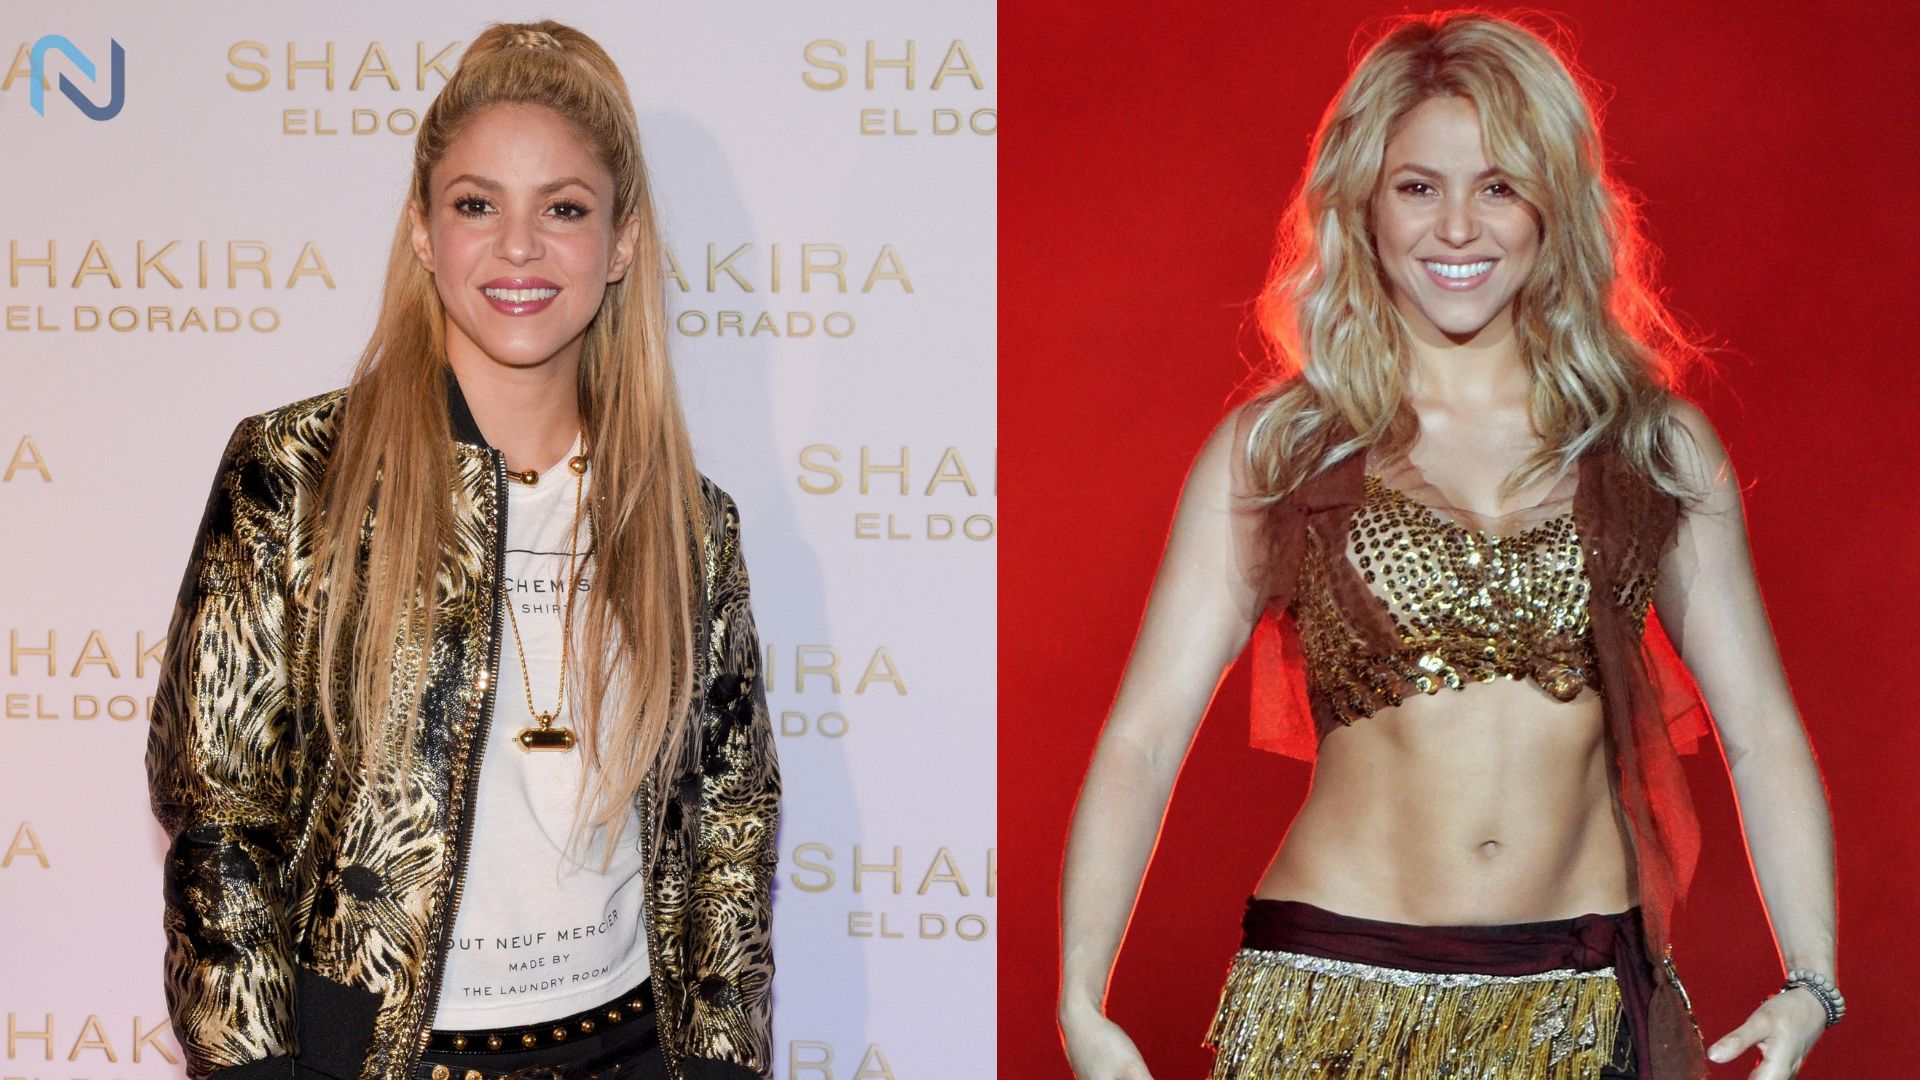 Shakira Richest Singer In The World